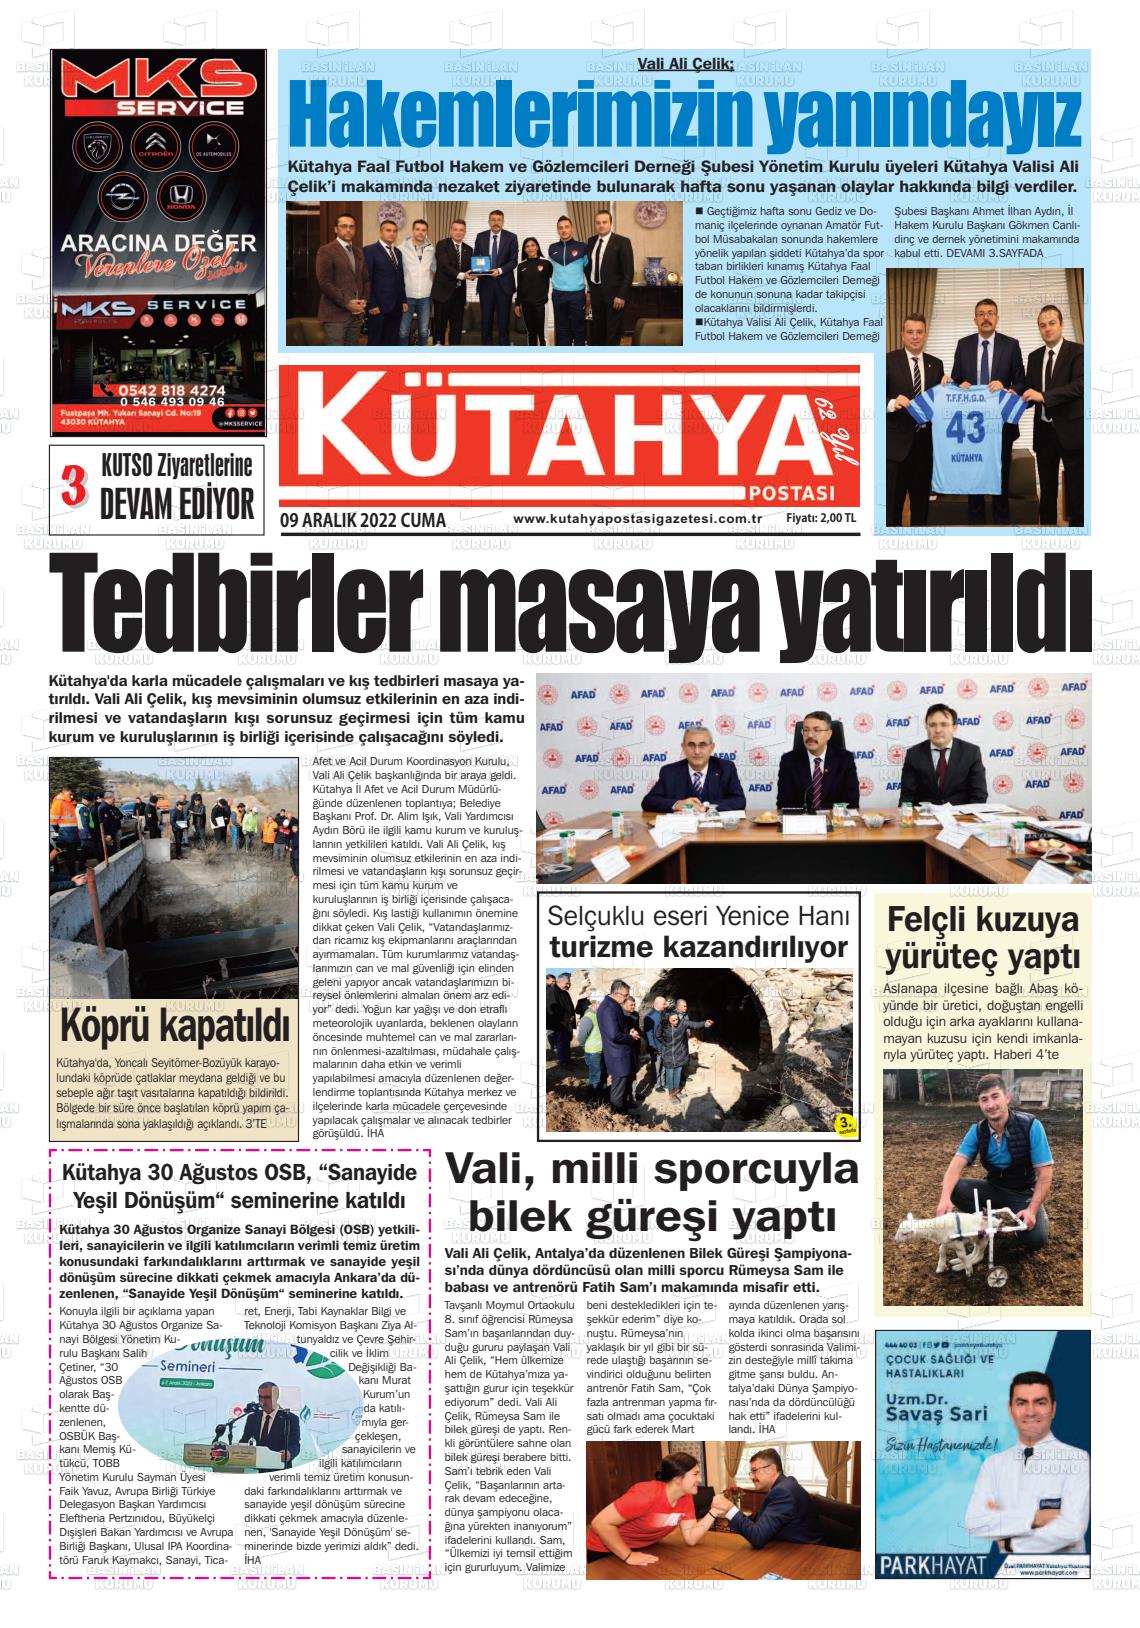 09 Aralık 2022 Kütahya Postası Gazete Manşeti